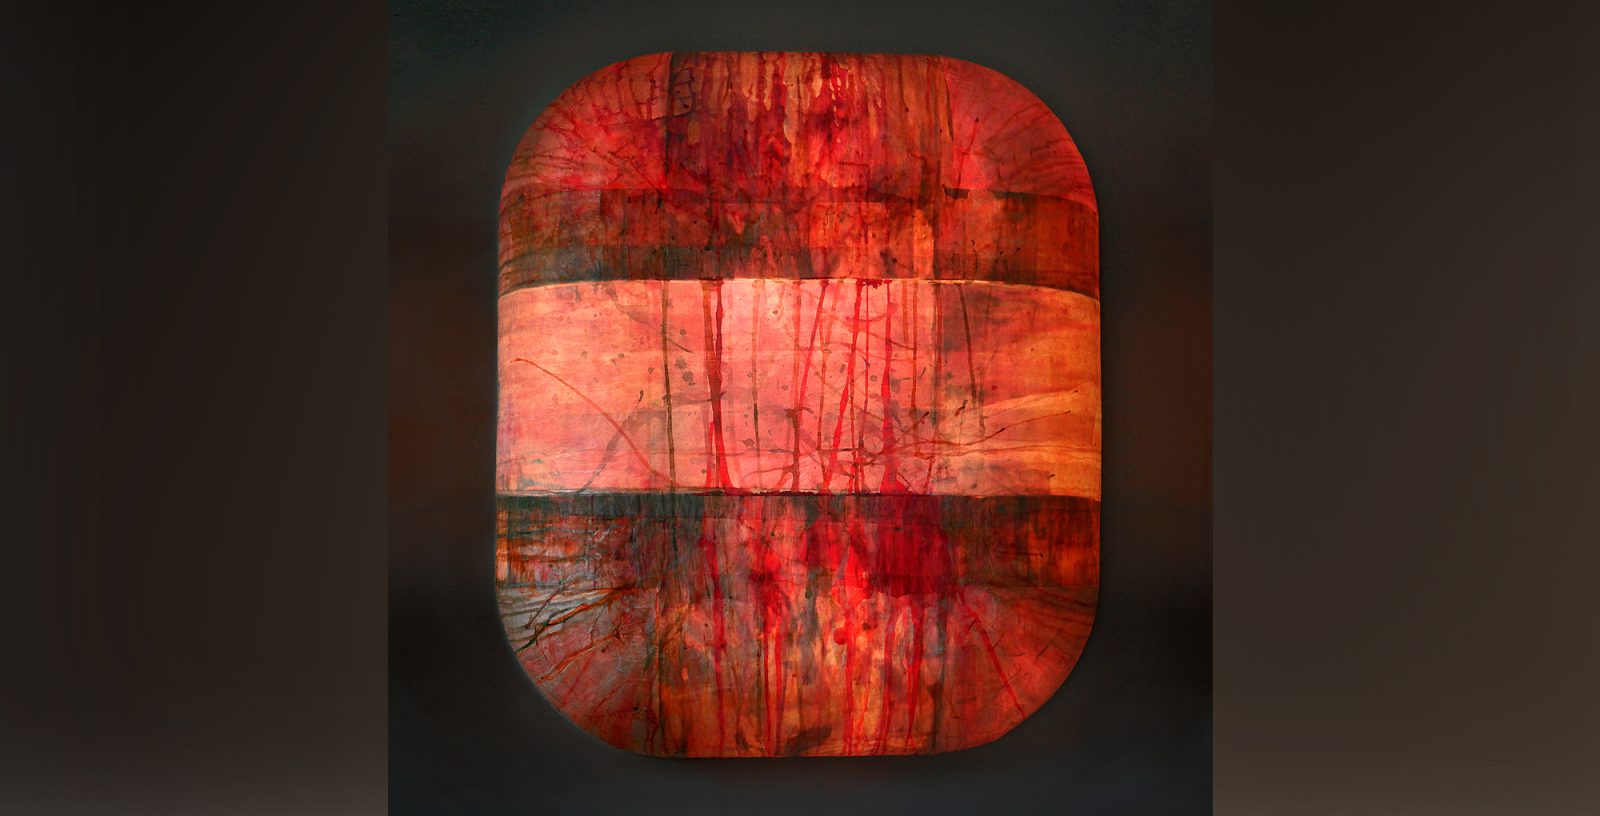 Leuchtobjekt – Beize und Ölfarbe auf Papier, 83 x 70 x 20 cm I 2014/19